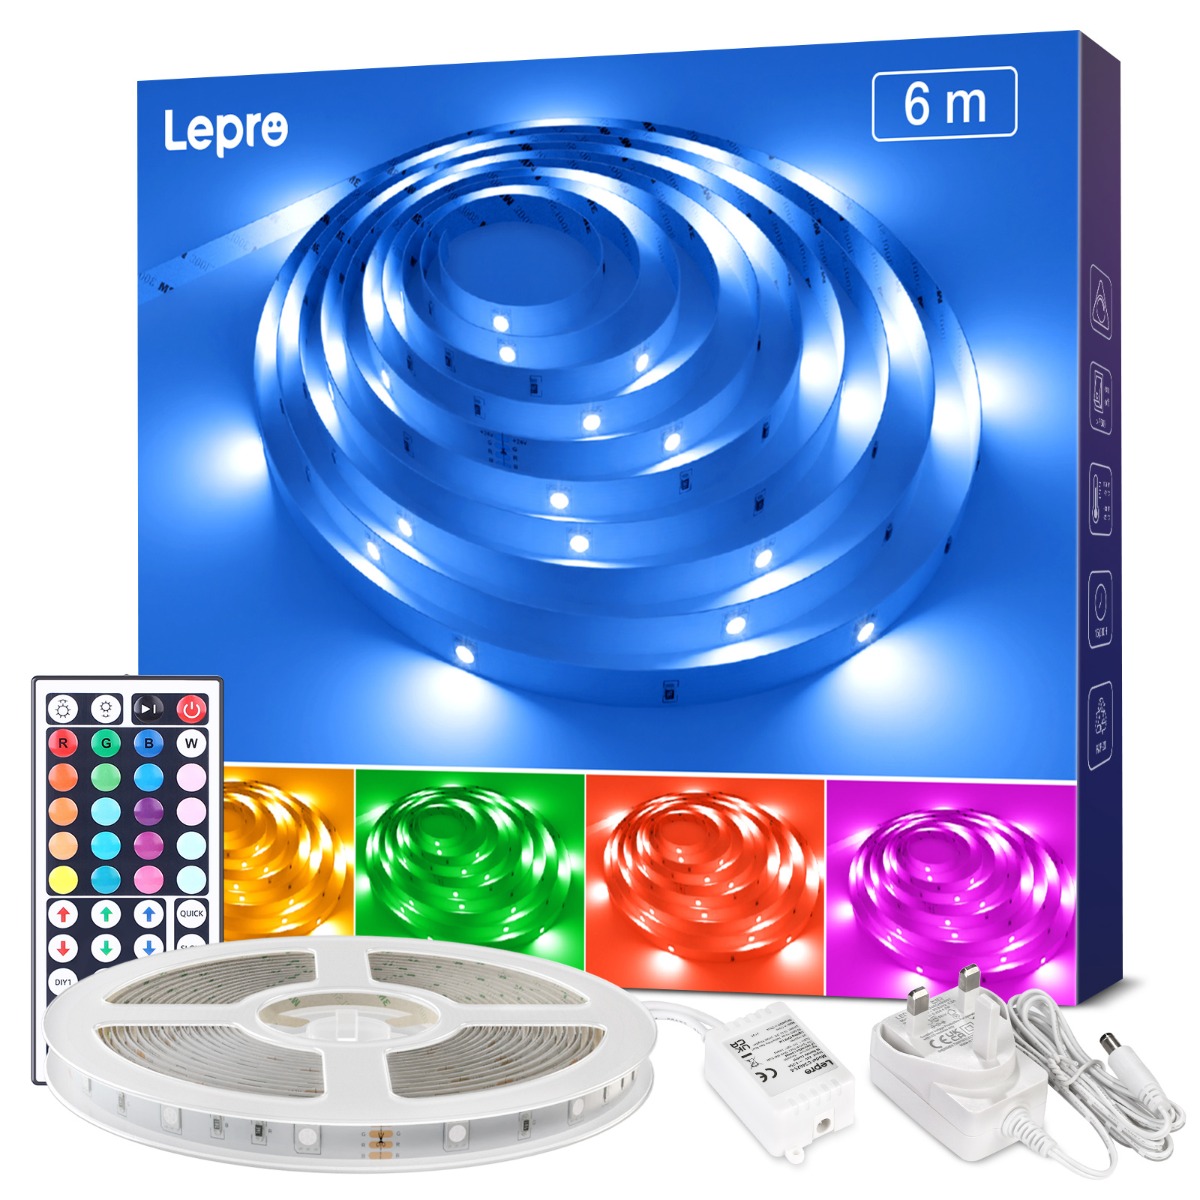 Lepro 6M LED Strip Lights, RGB Colour Changing LED Lights for